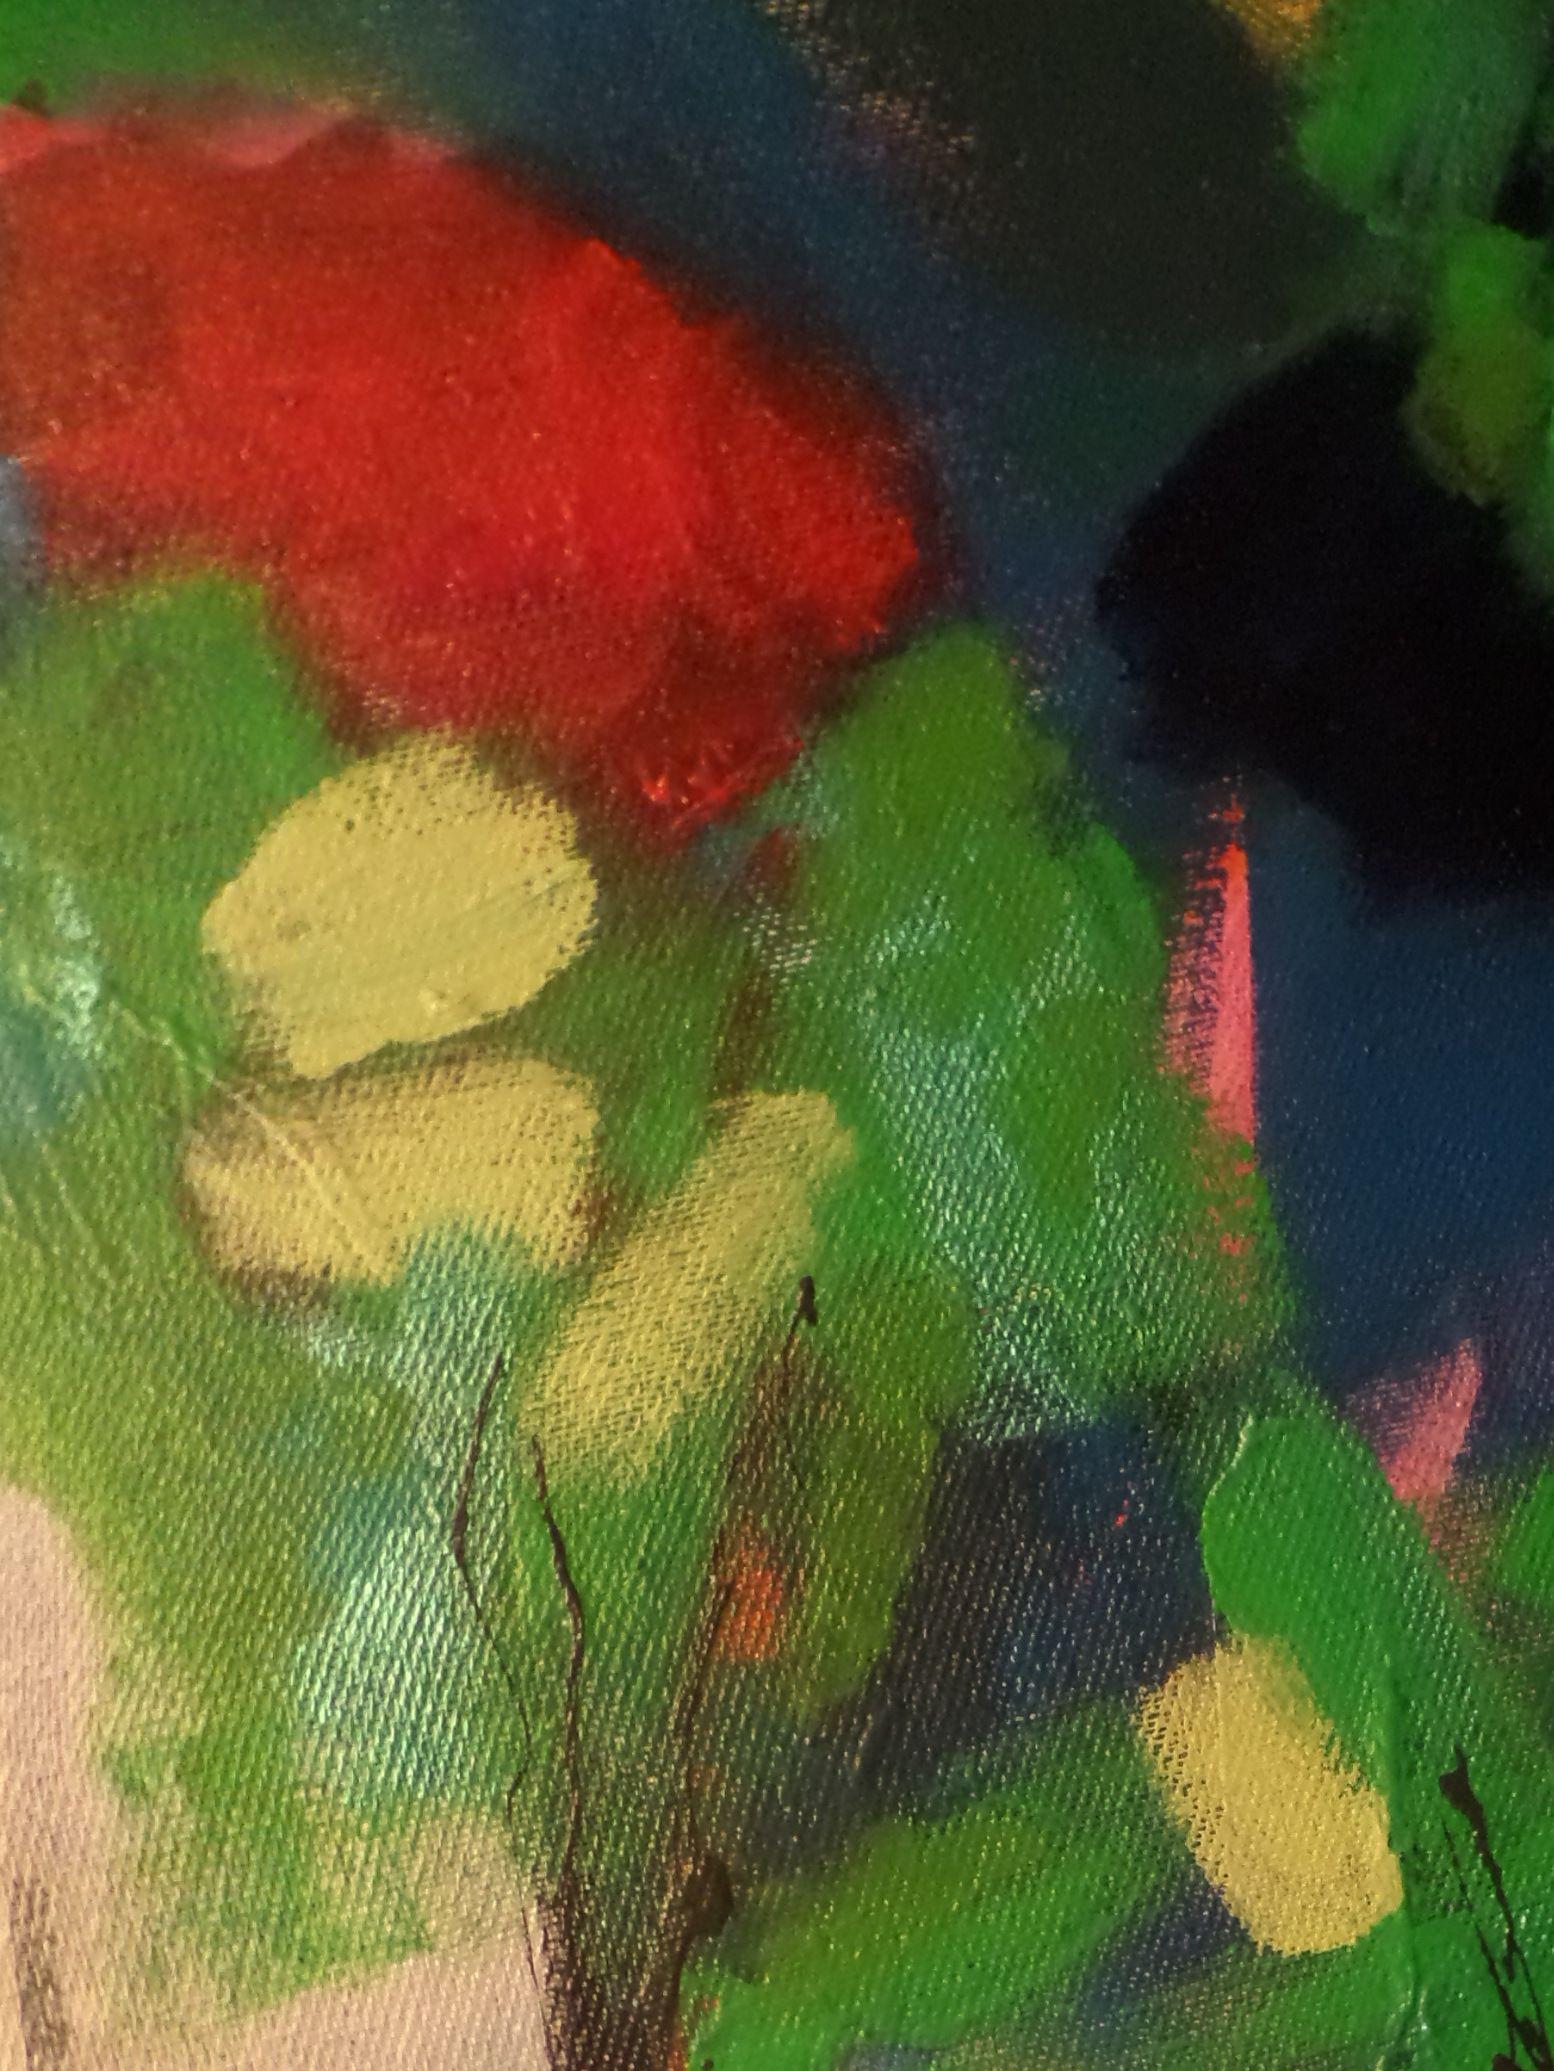 inspirée par la lumière et le mouvement, je voulais que les couleurs soient vives, abstraites, peut-être une promenade dans le parc la peinture dorée se reflétant à travers les arbres, projetant de la lumière et de l'obscurité  des blocs de rouge et